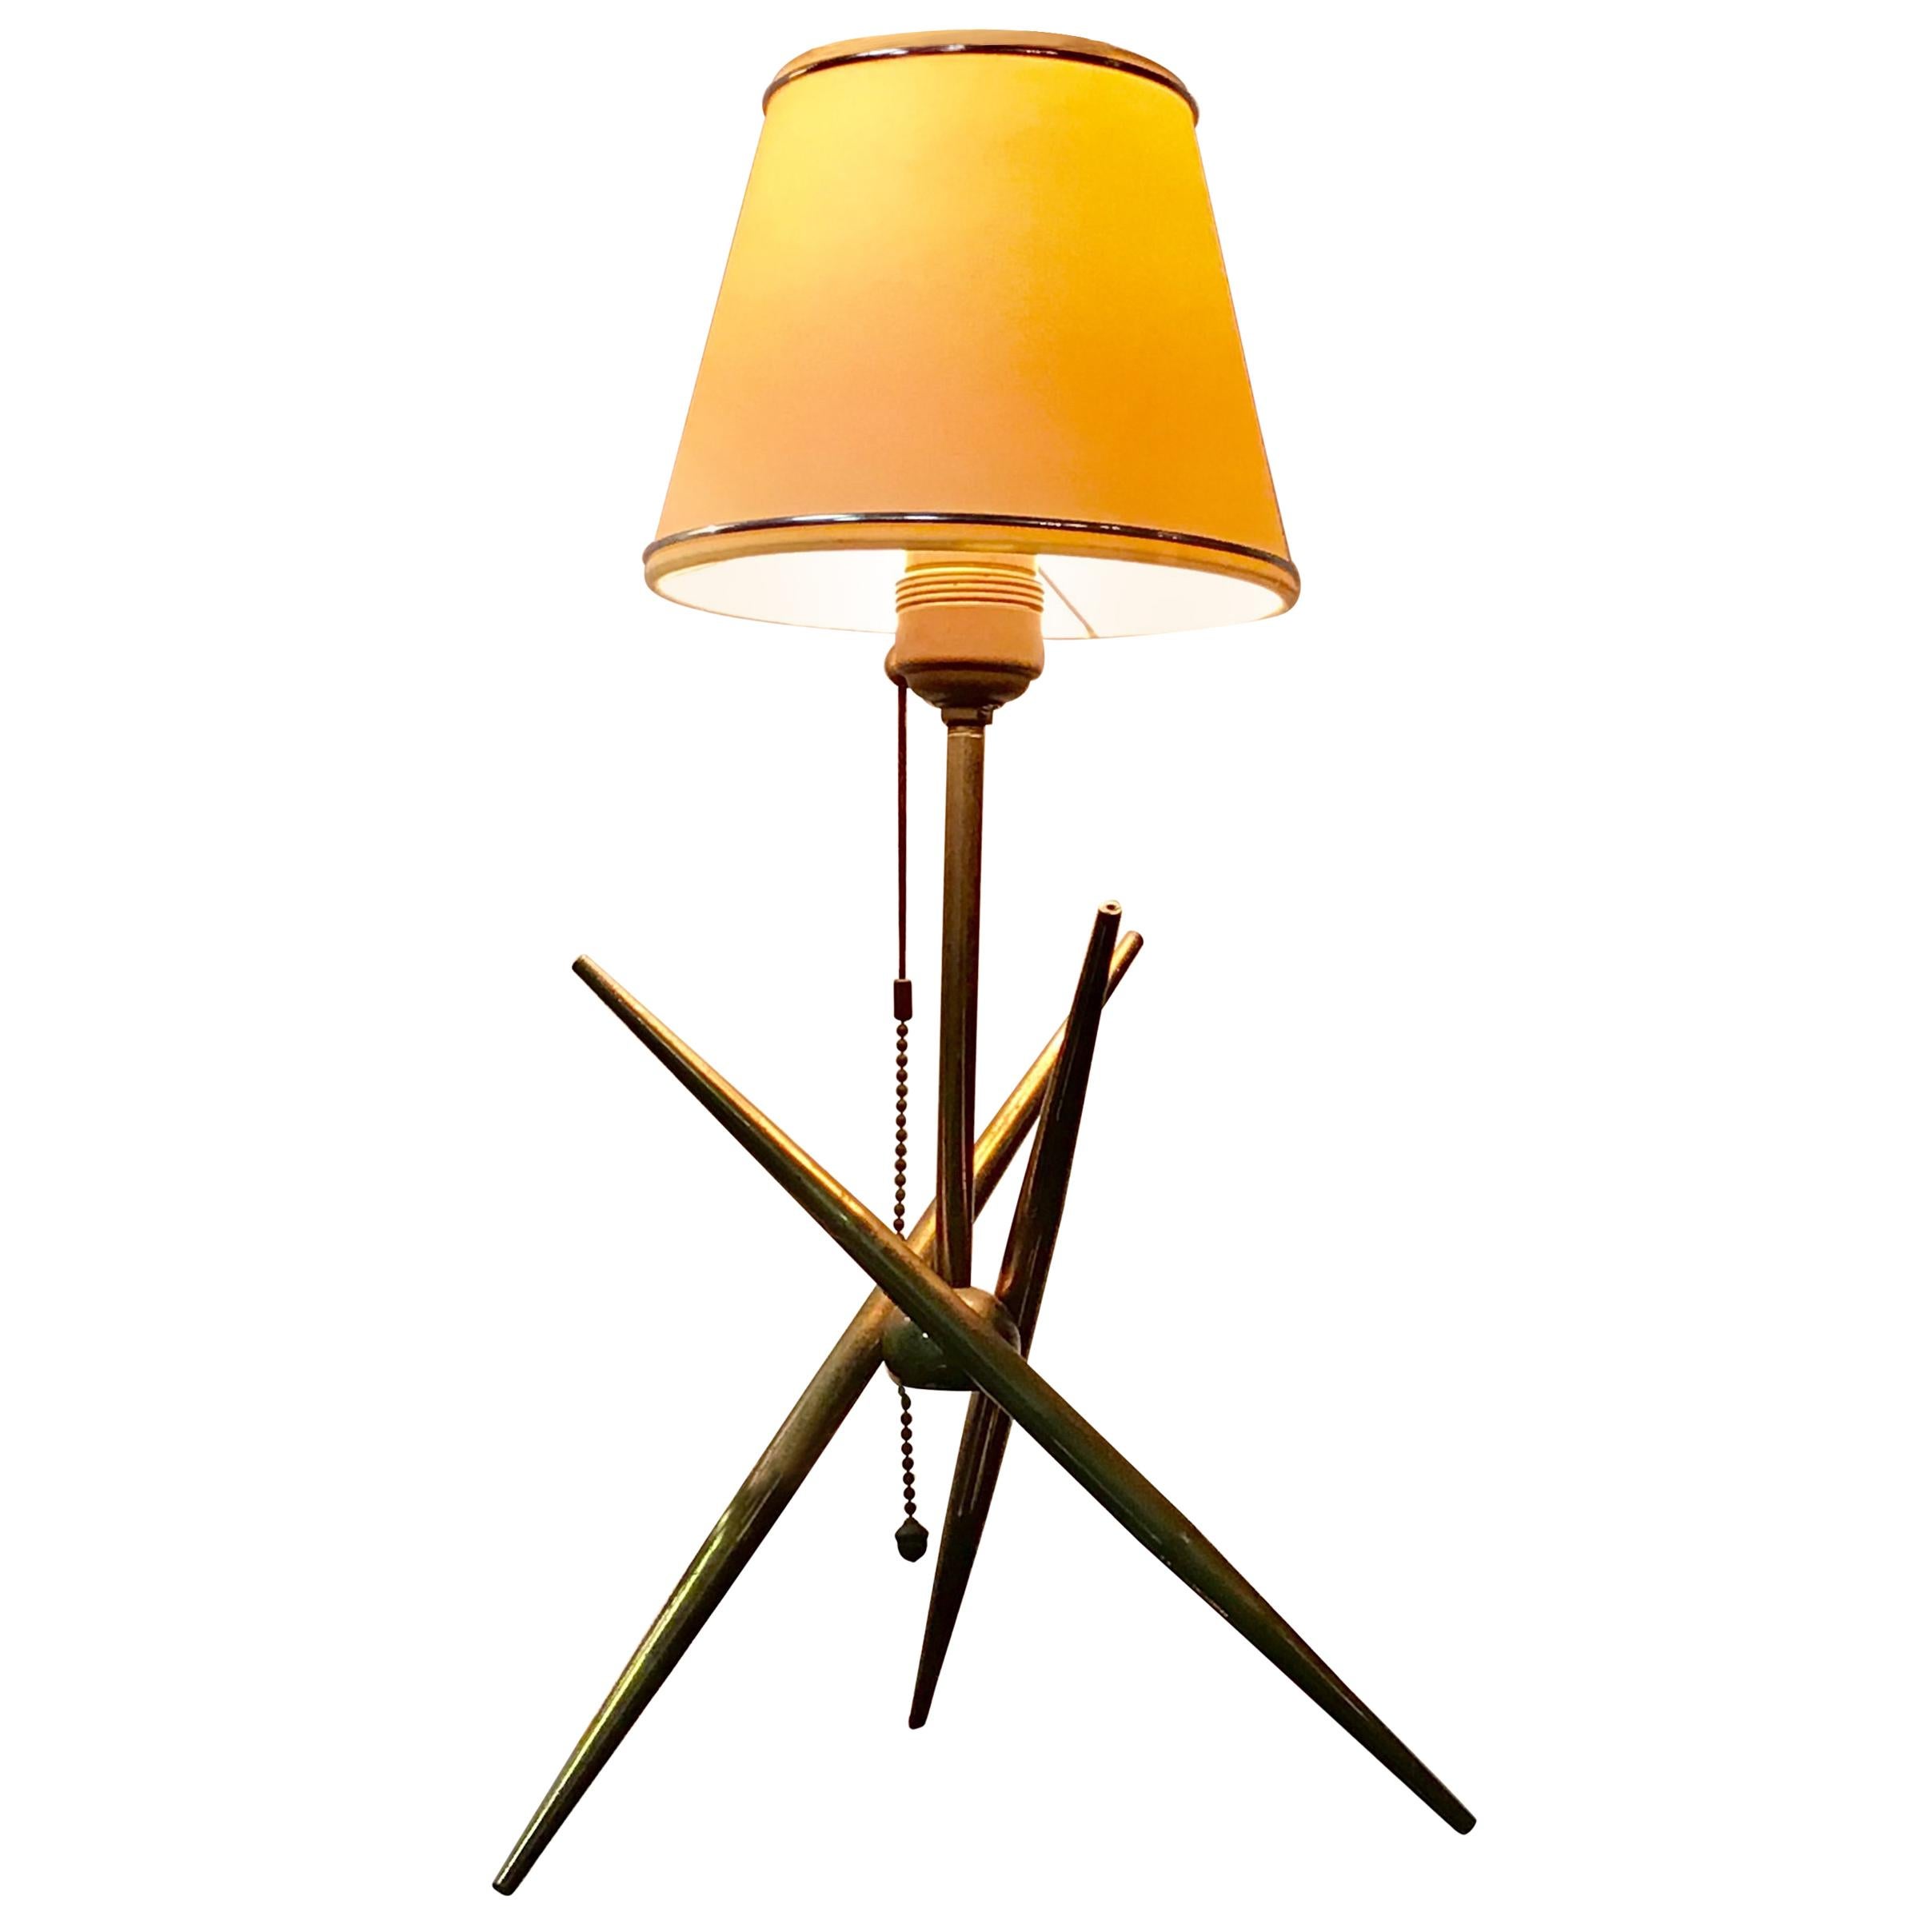 1950s Belgium Atomic lamp